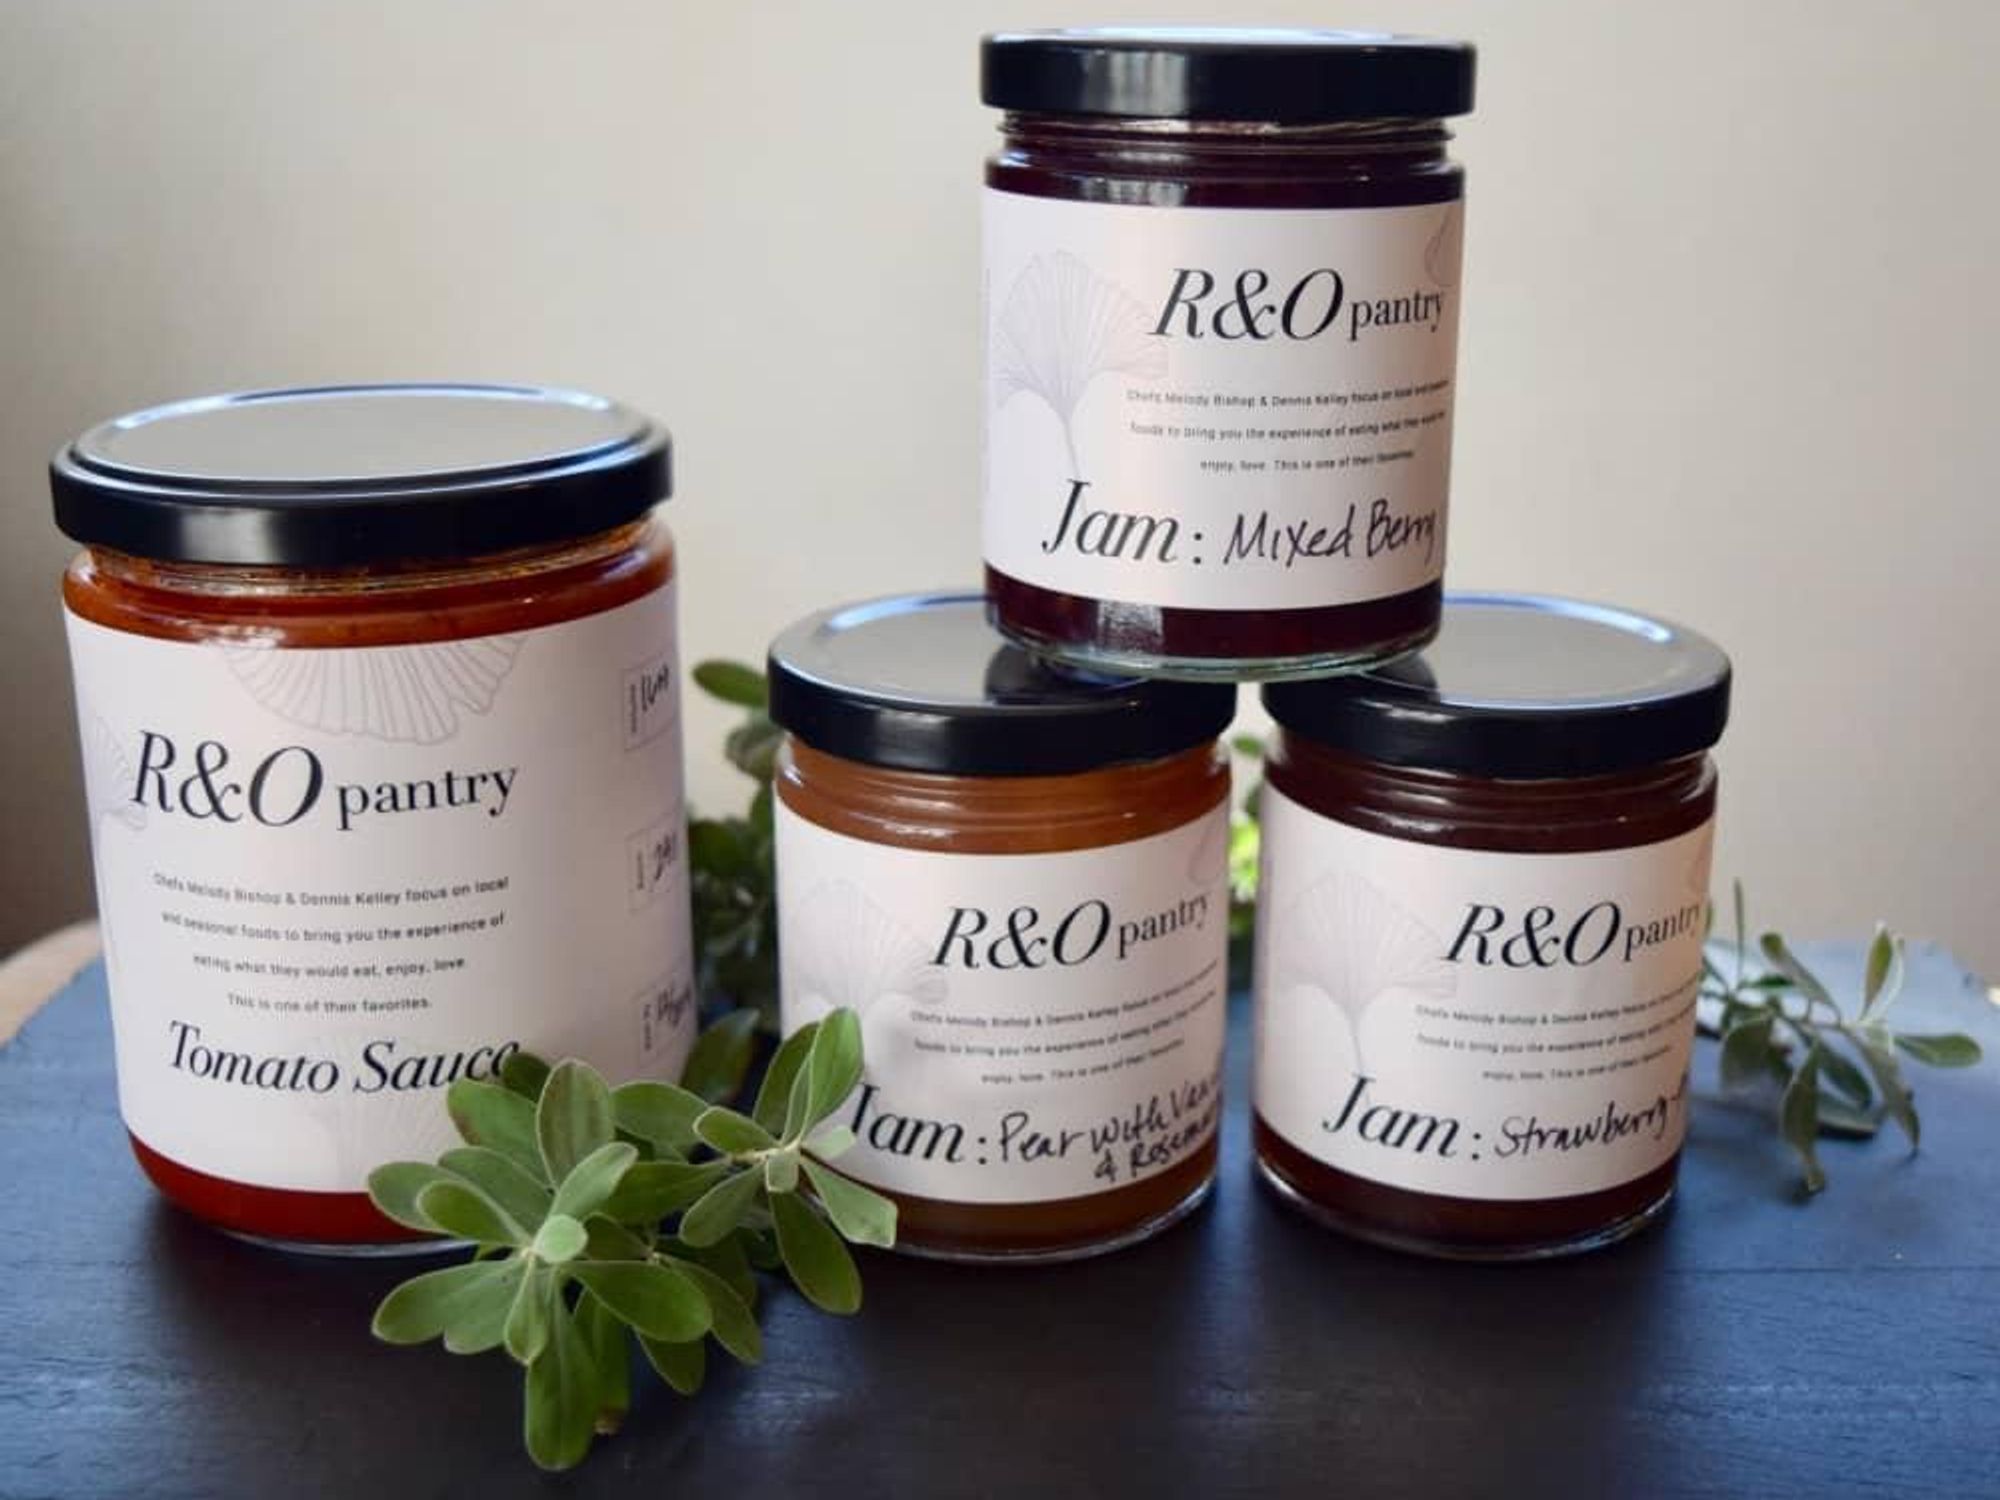 R&O Pantry jams sauces